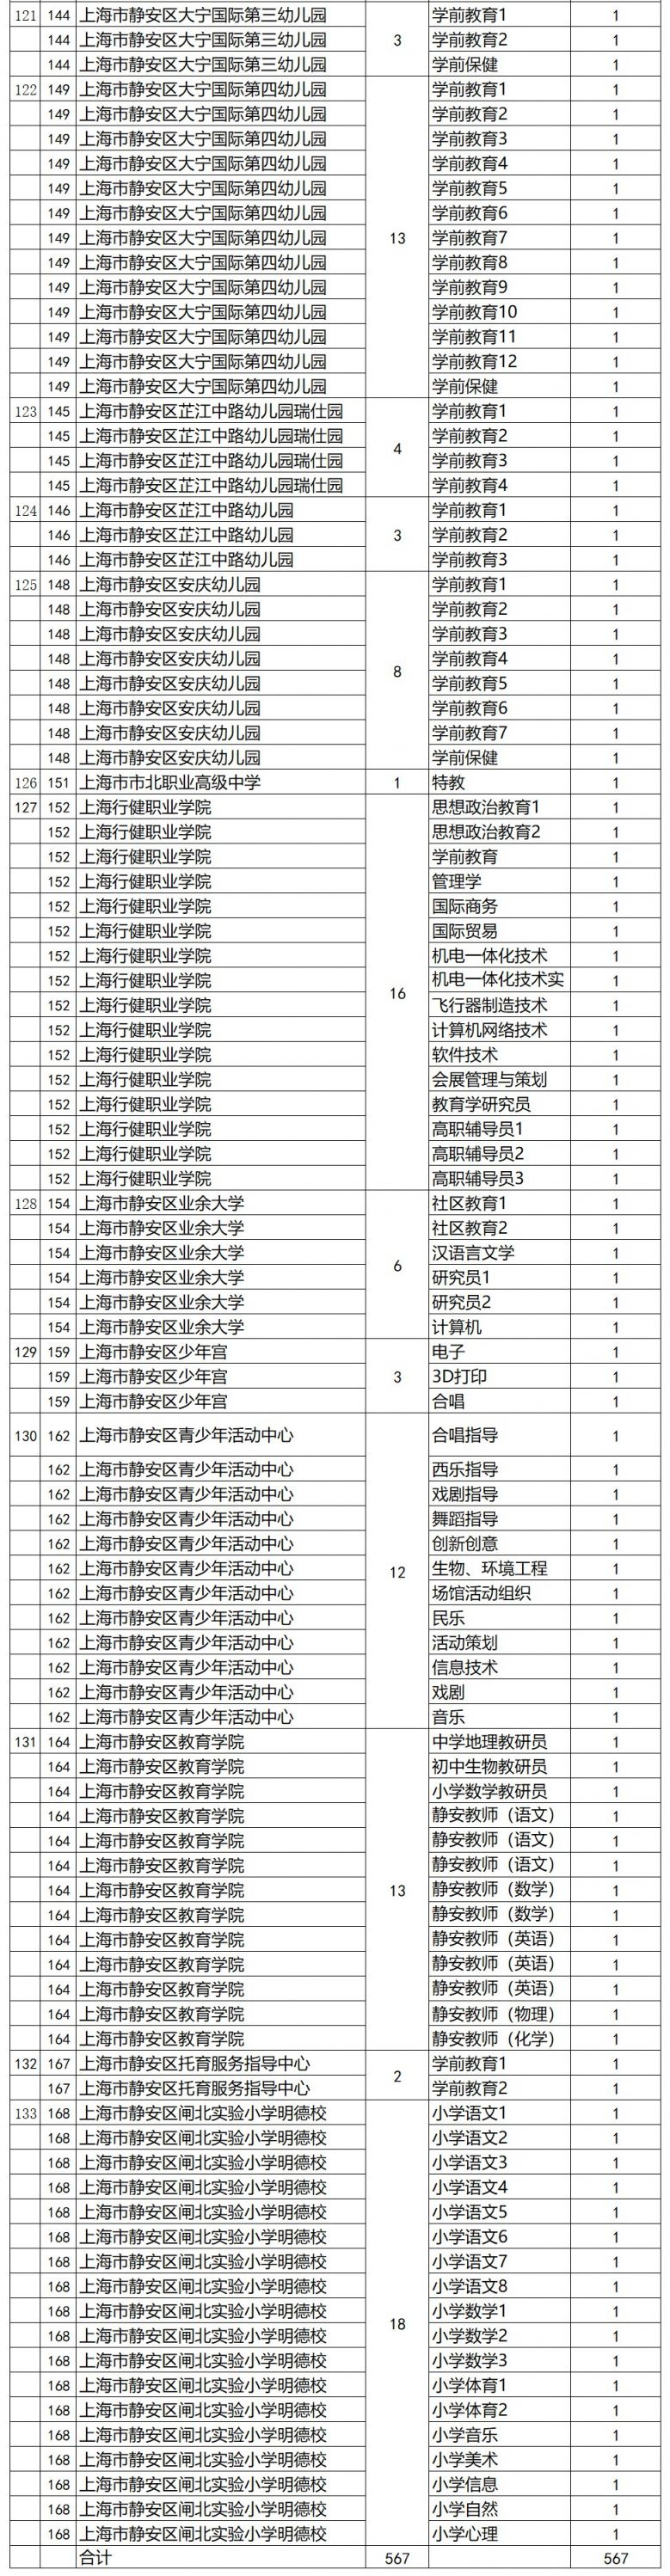 2020上海静安区教师招聘第二批 招聘567名教师